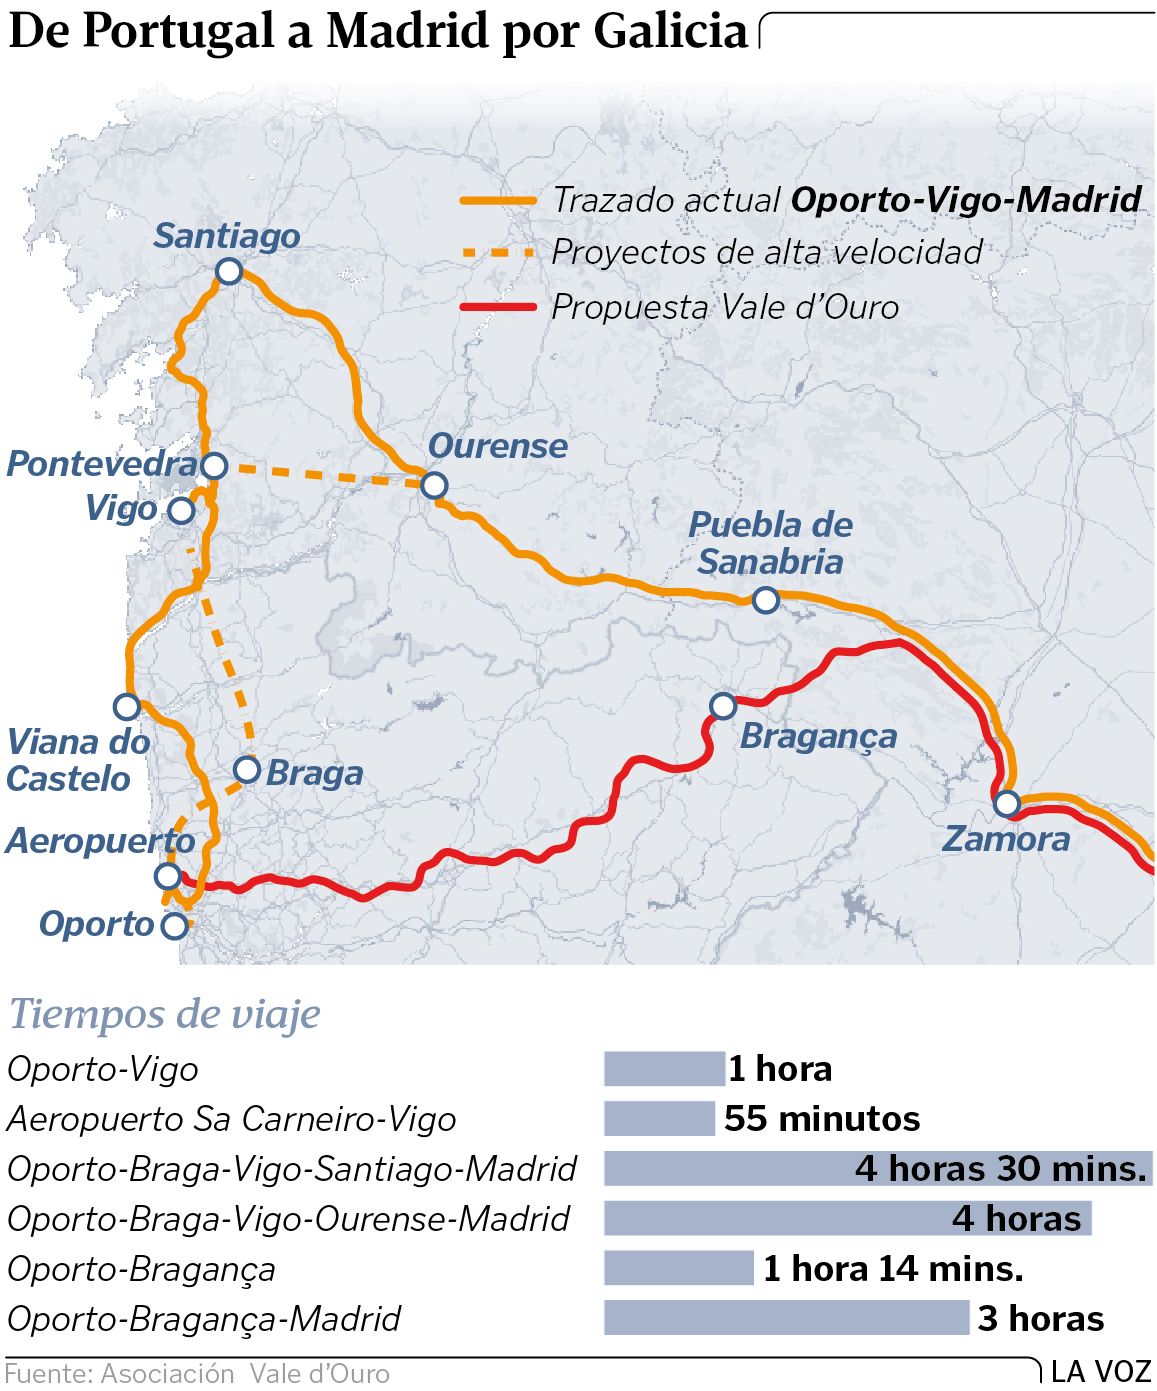 Galiza: Mapa da Renfe coloca cidade de Vigo… em Portugal! - Rádio